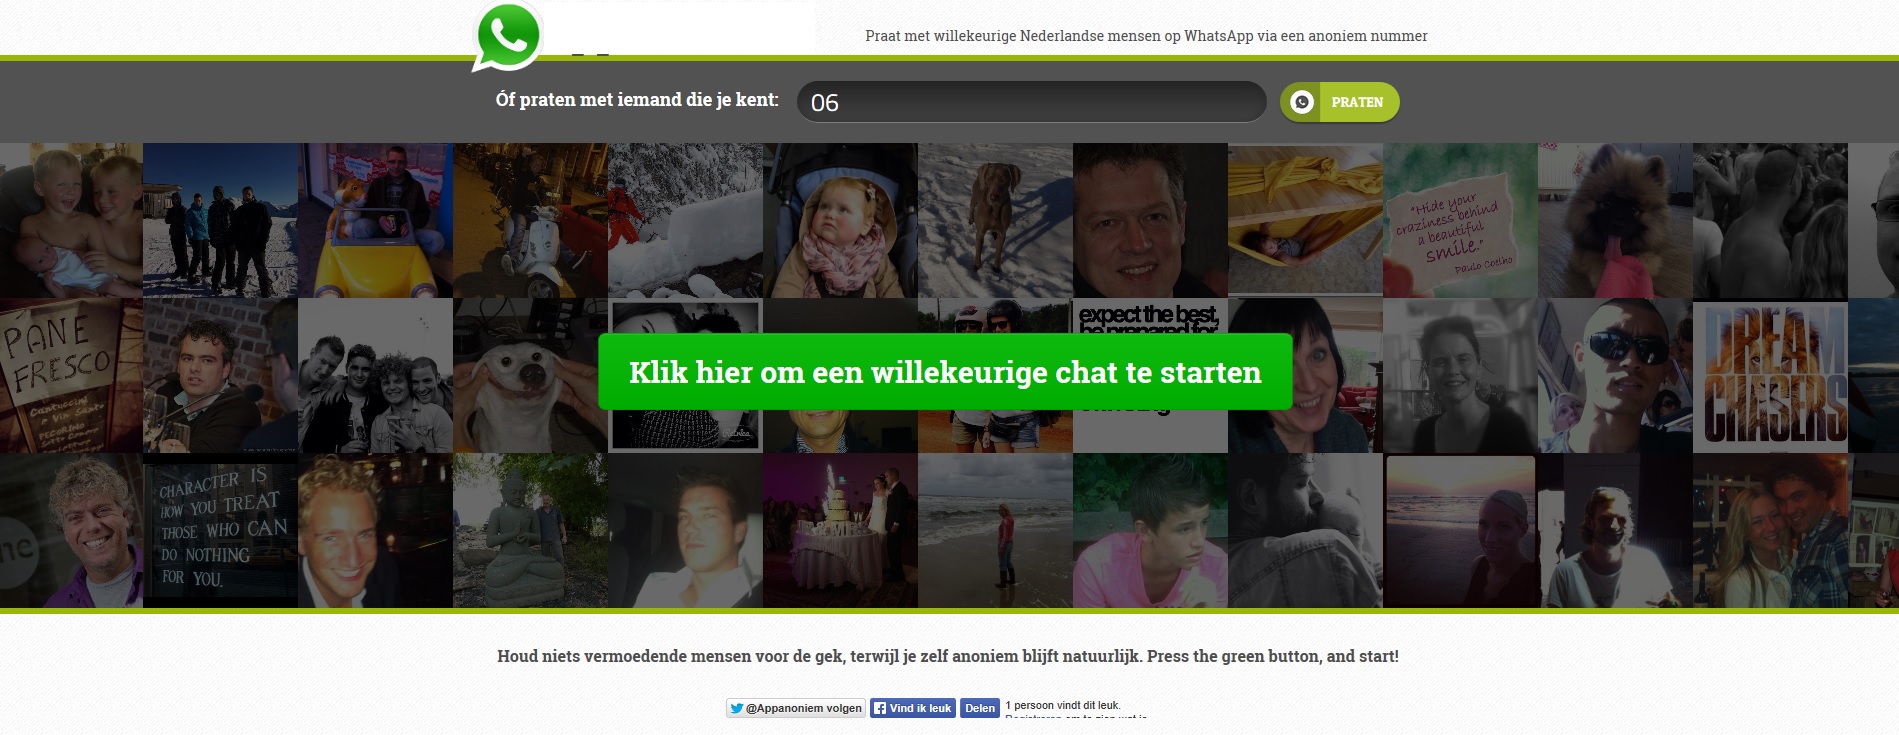 App*Anoniem.nl - Anoniem whatsappen! Het kan met deze site!-jpg